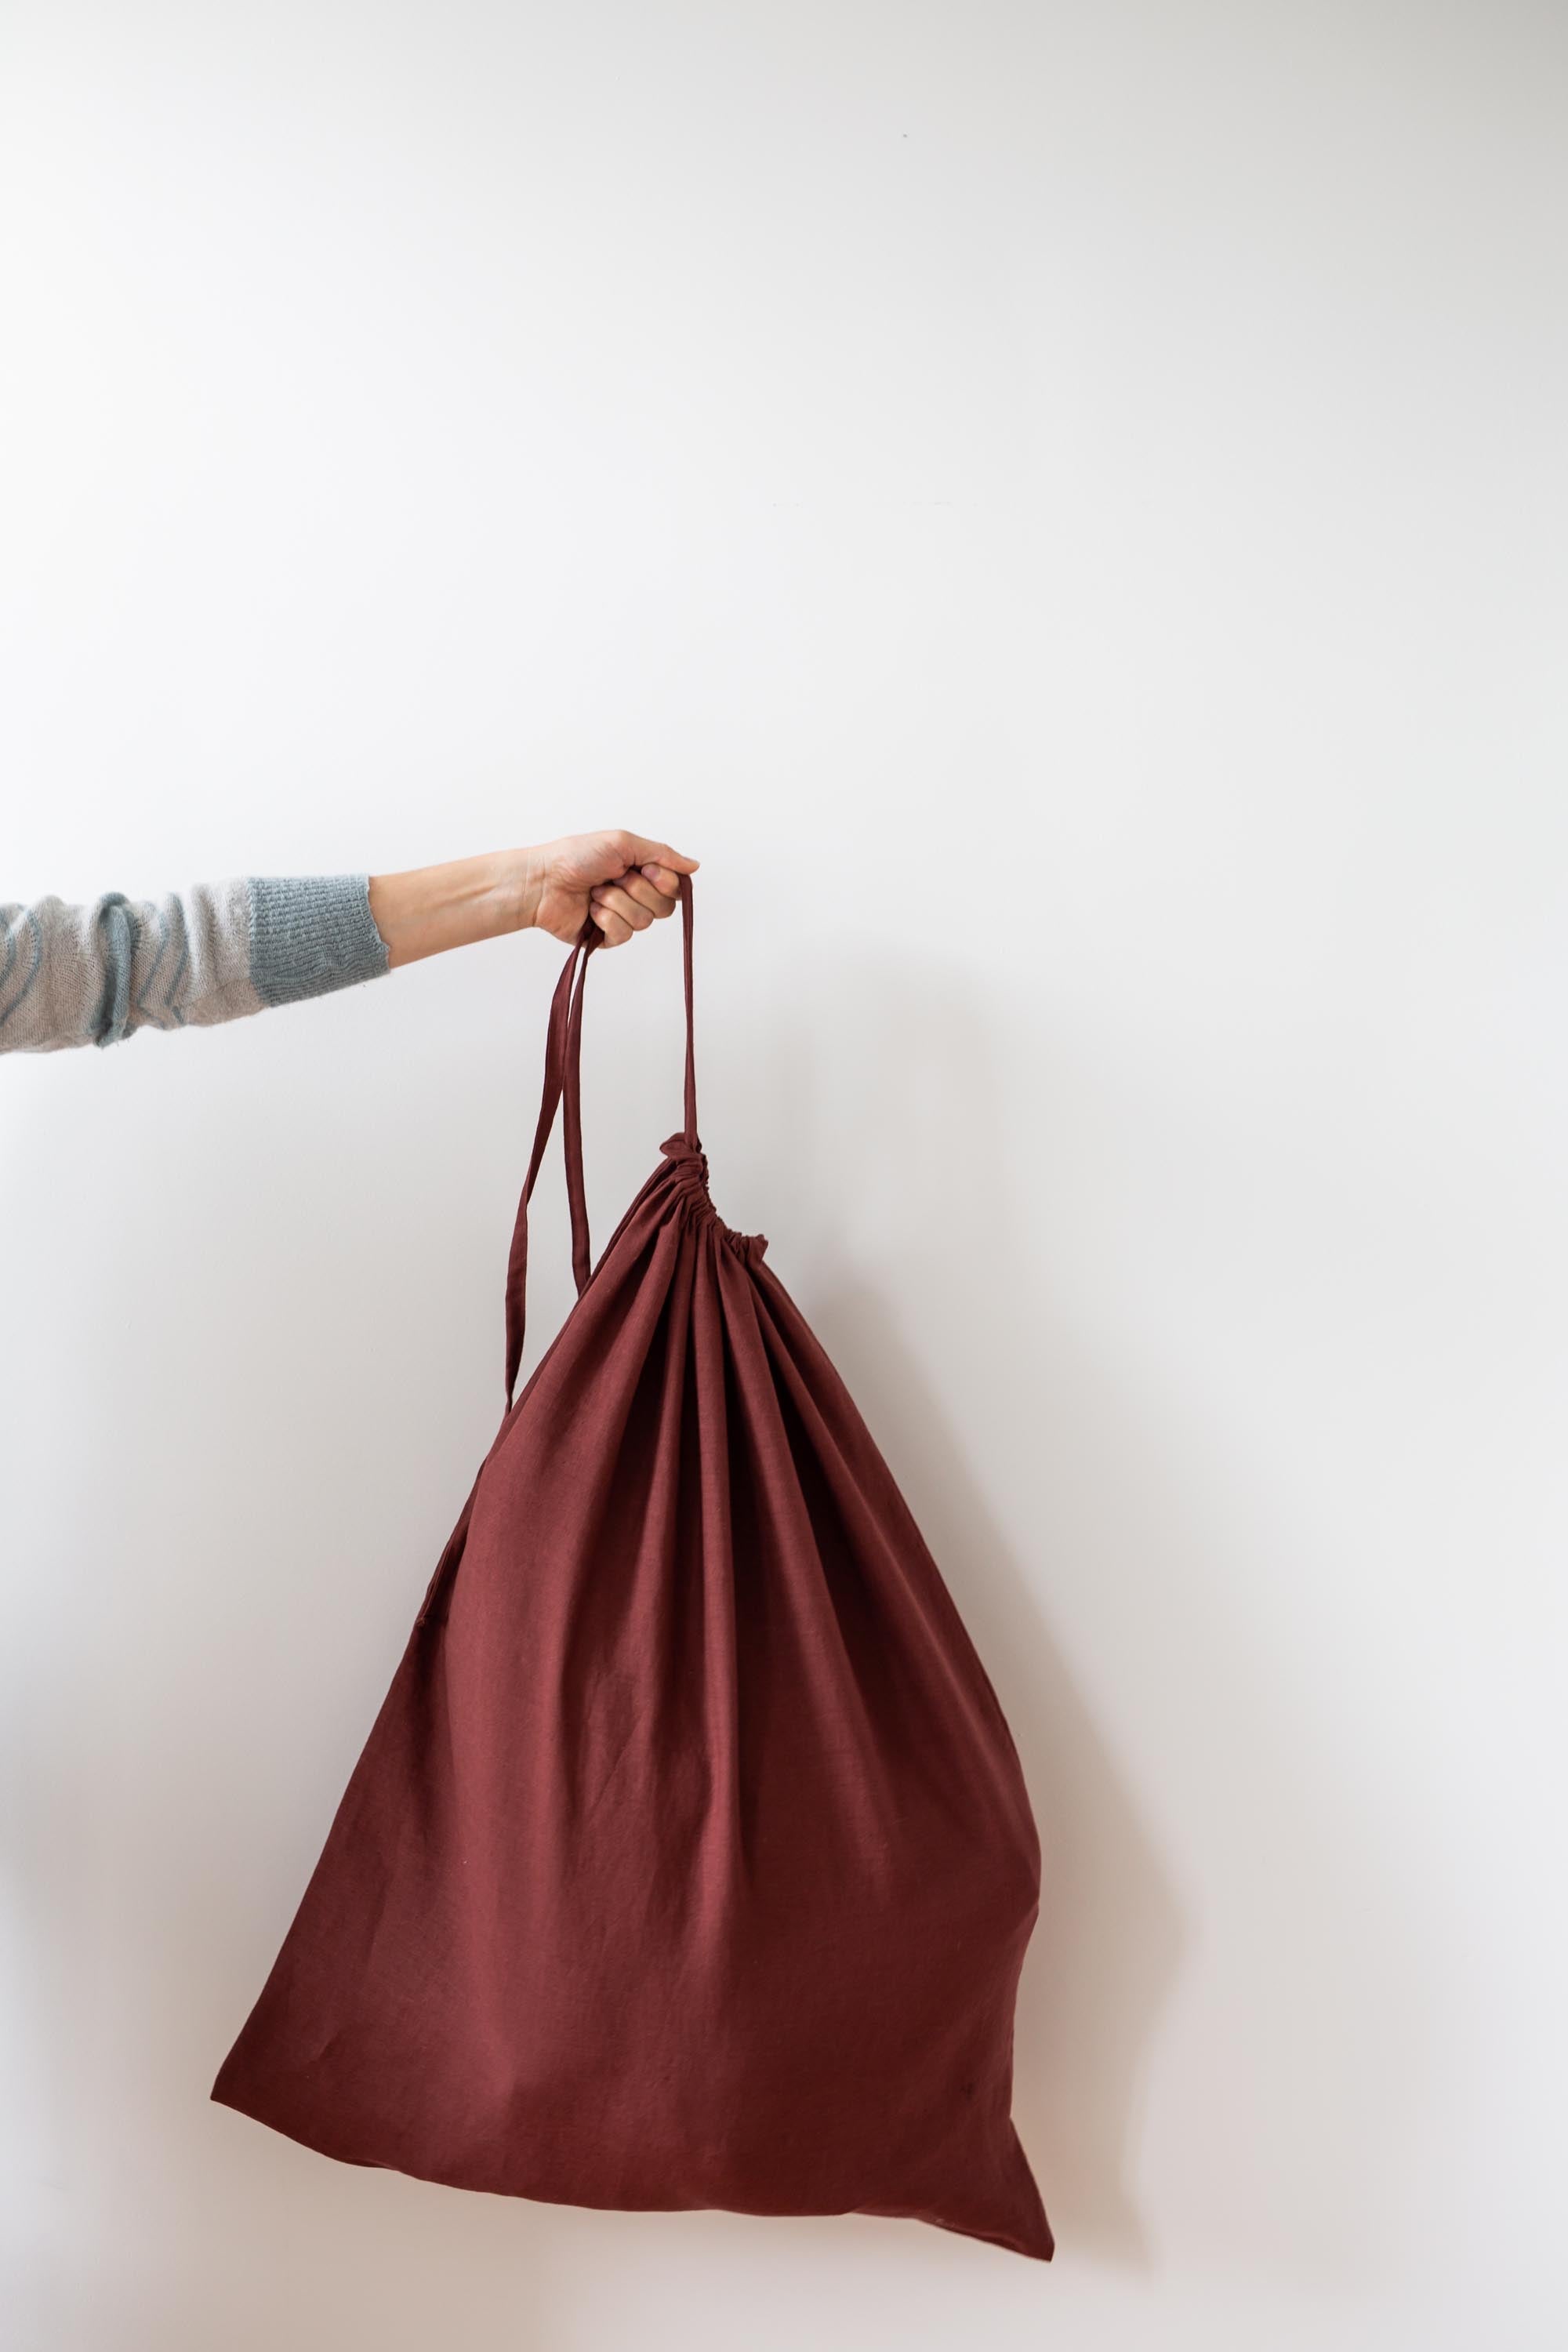 Terracotta Linen Bag By AmourLInen